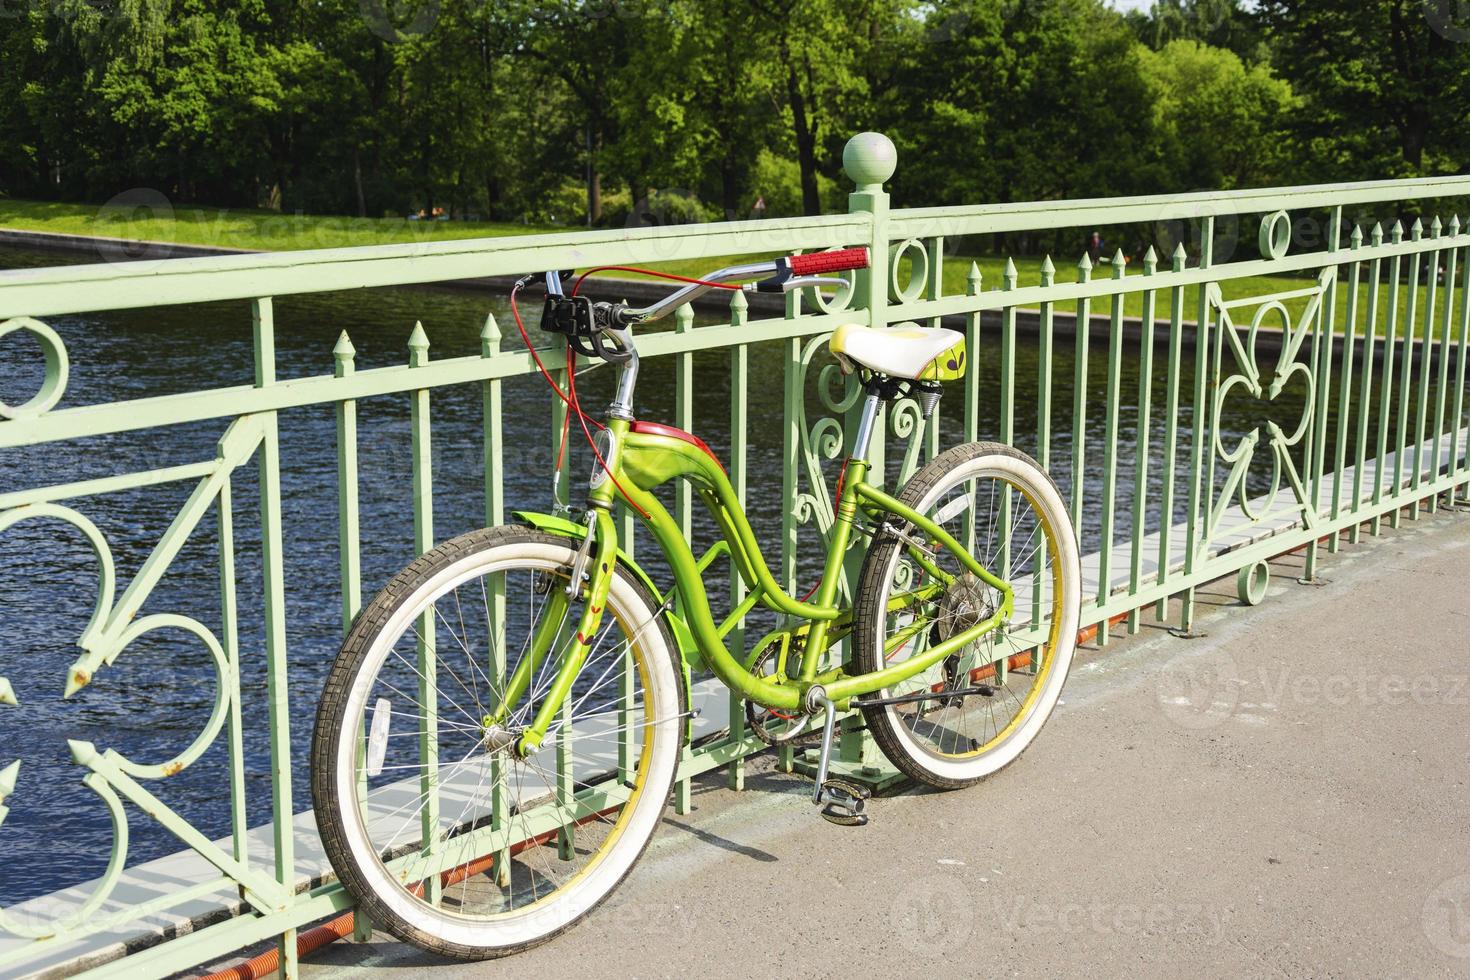 beau croiseur de vélo garé sur le pont au-dessus de la rivière, cyclisme, activités de plein air photo